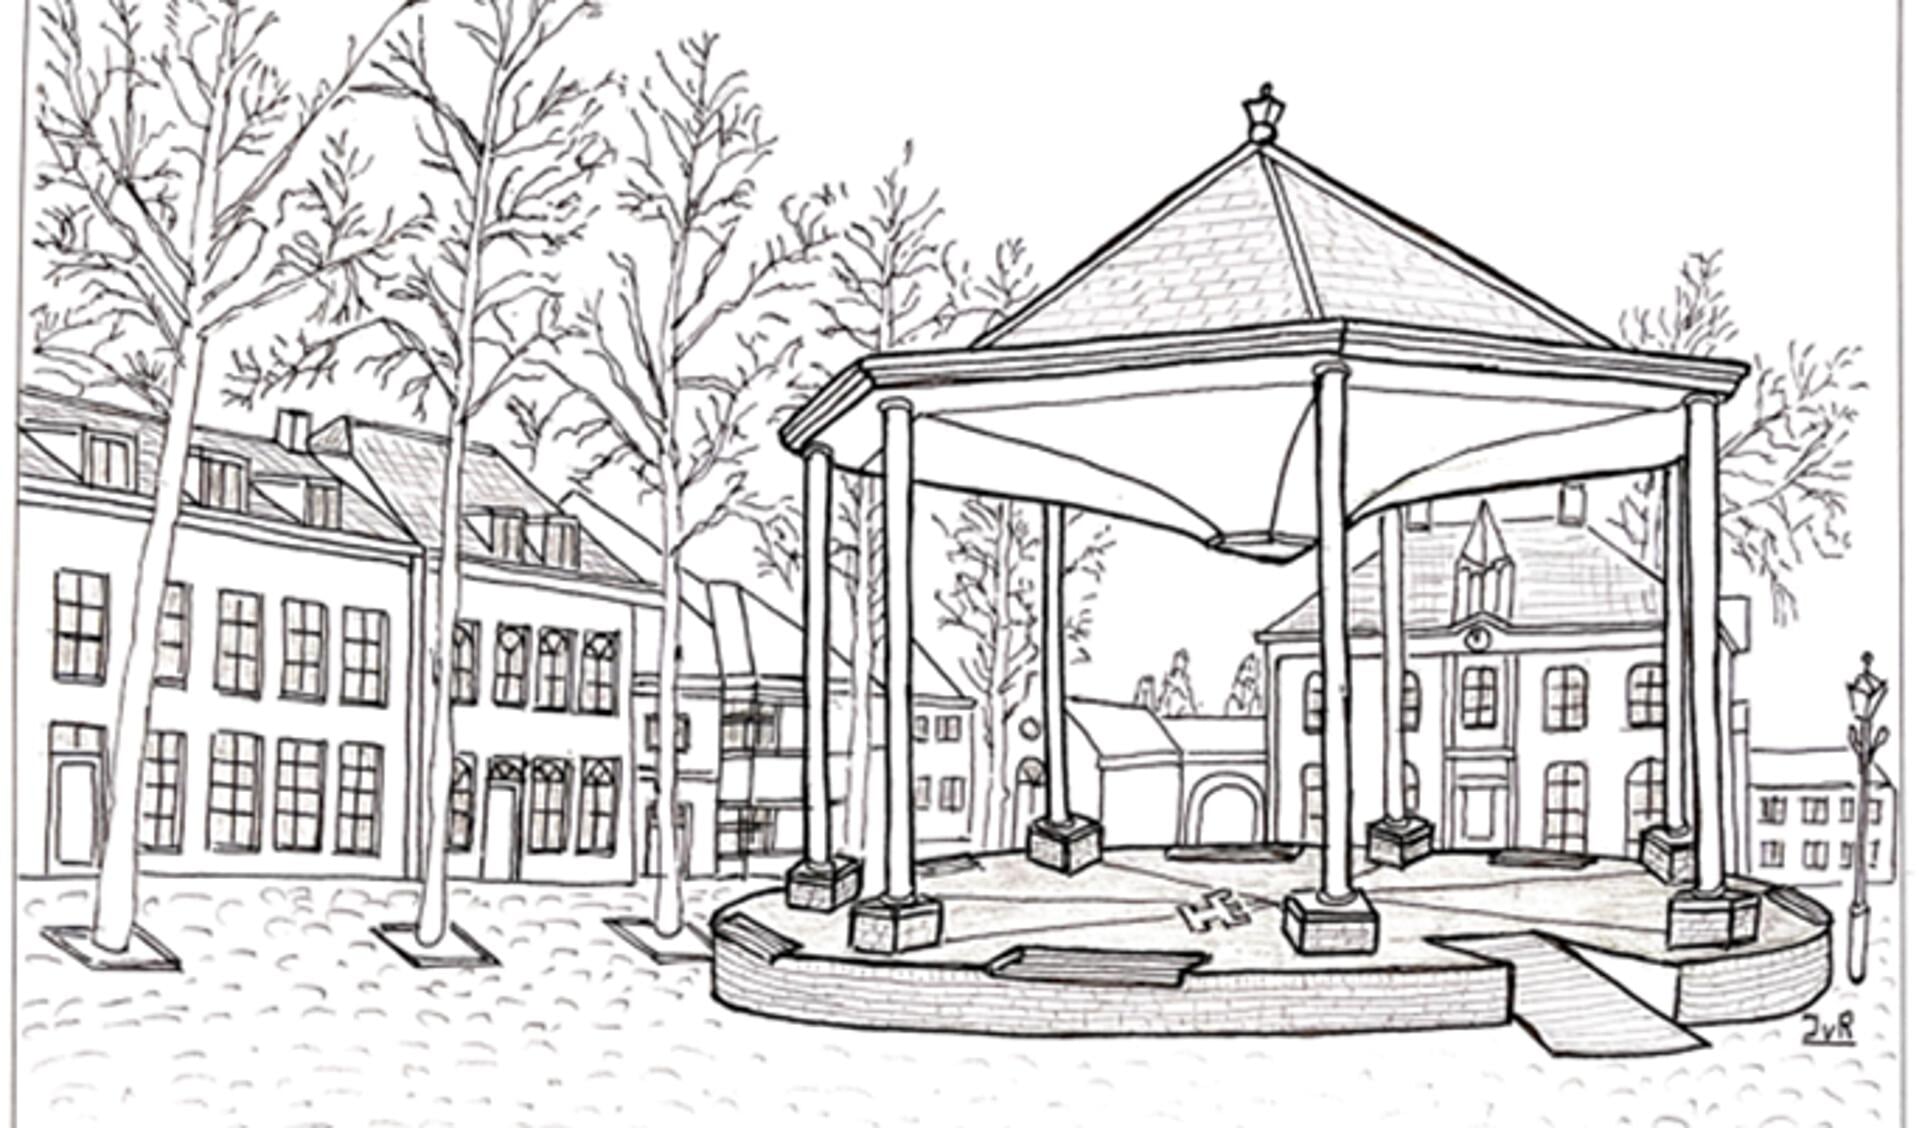 Een ideale schets van de nieuwe kiosk door de ogen van Jan van Roosmalen.